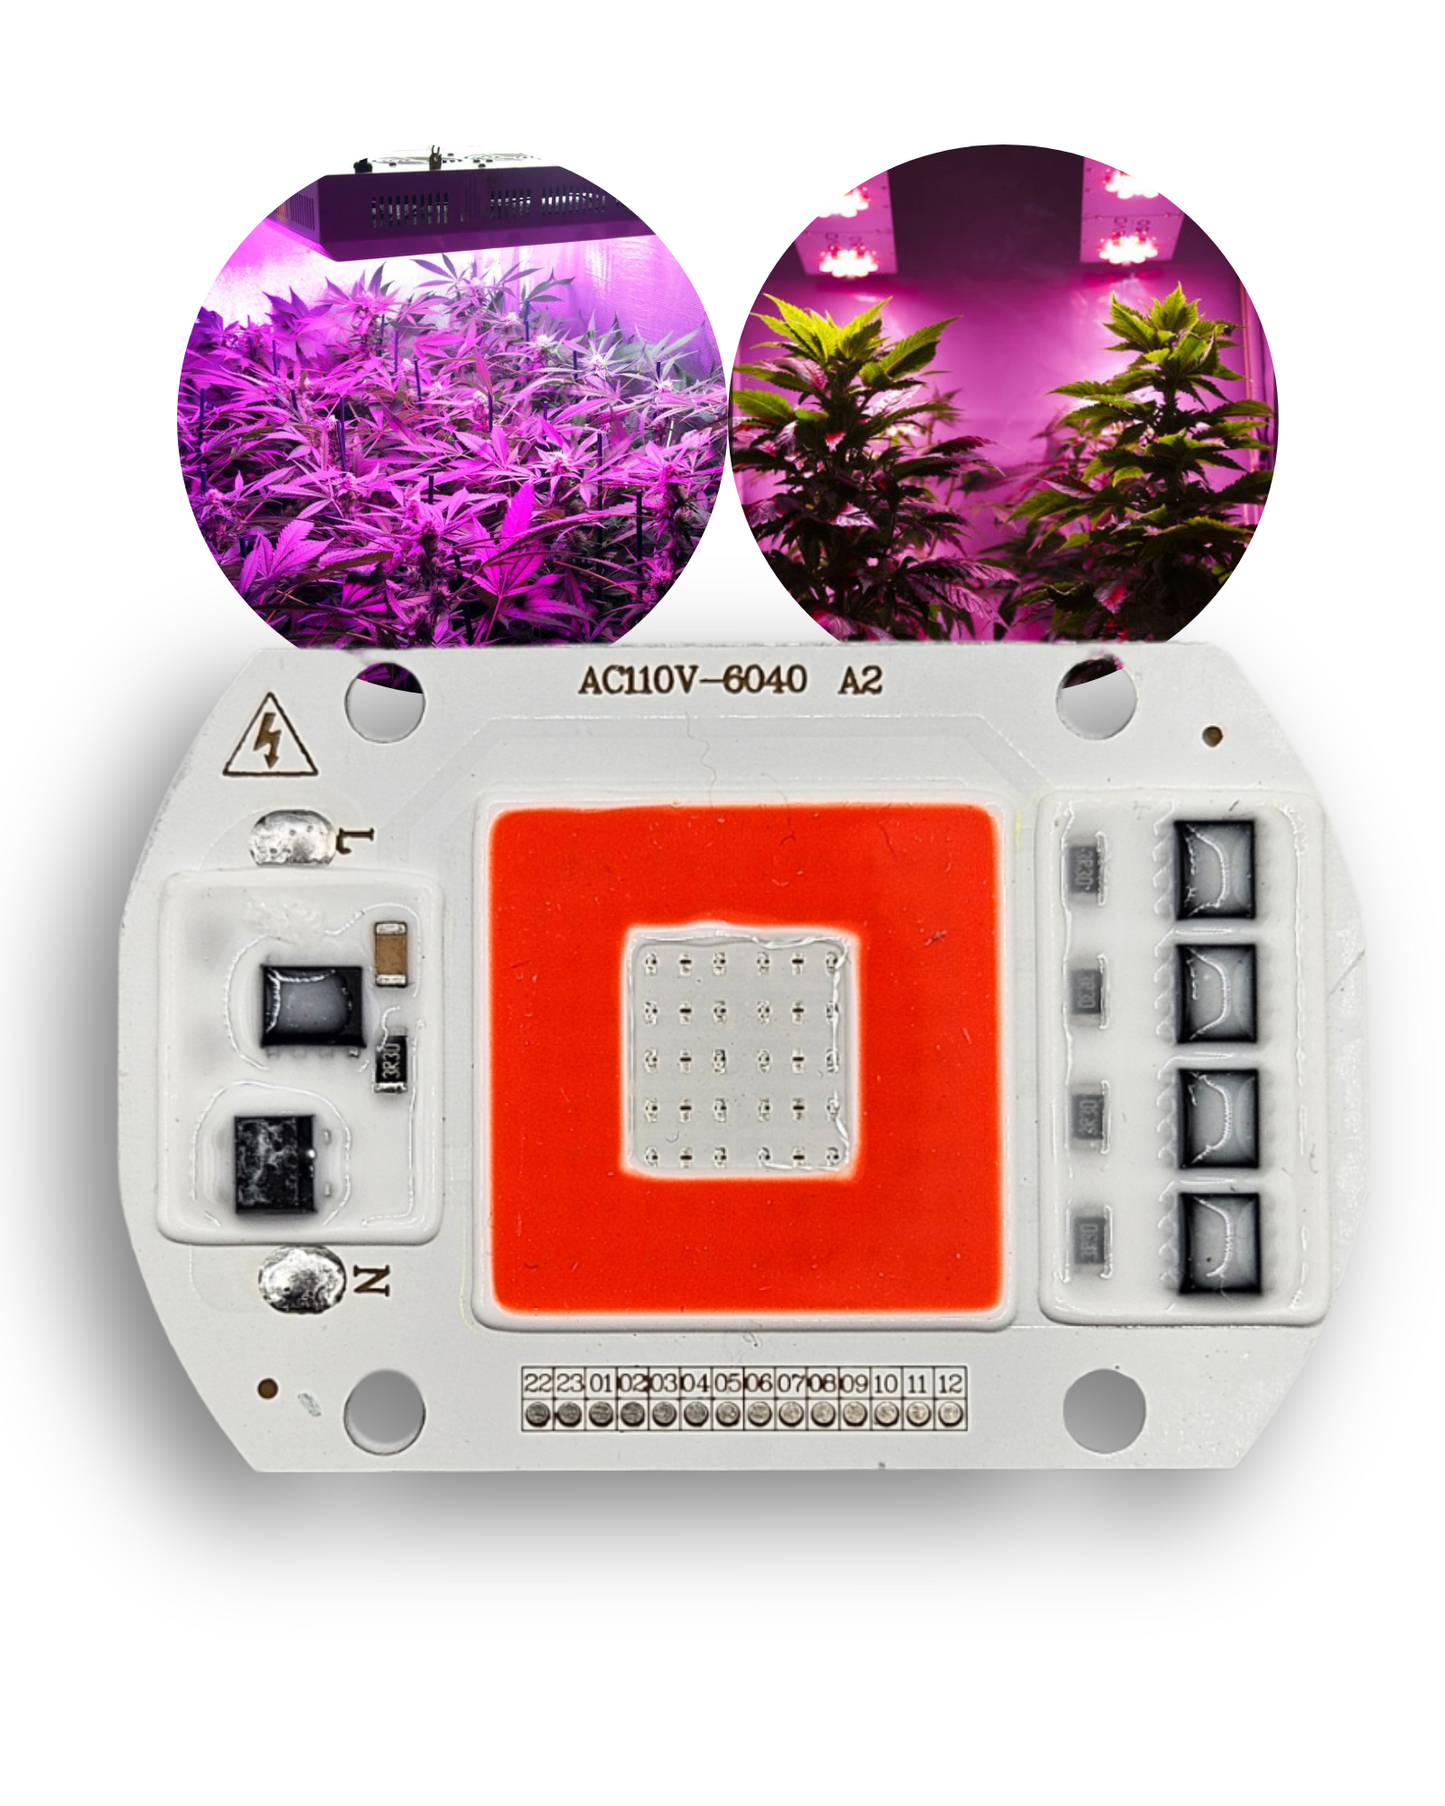 Chip LED para Cultivo de plantas 50W 6040 110V | RED + BLUE | Espectro completo para invernadero